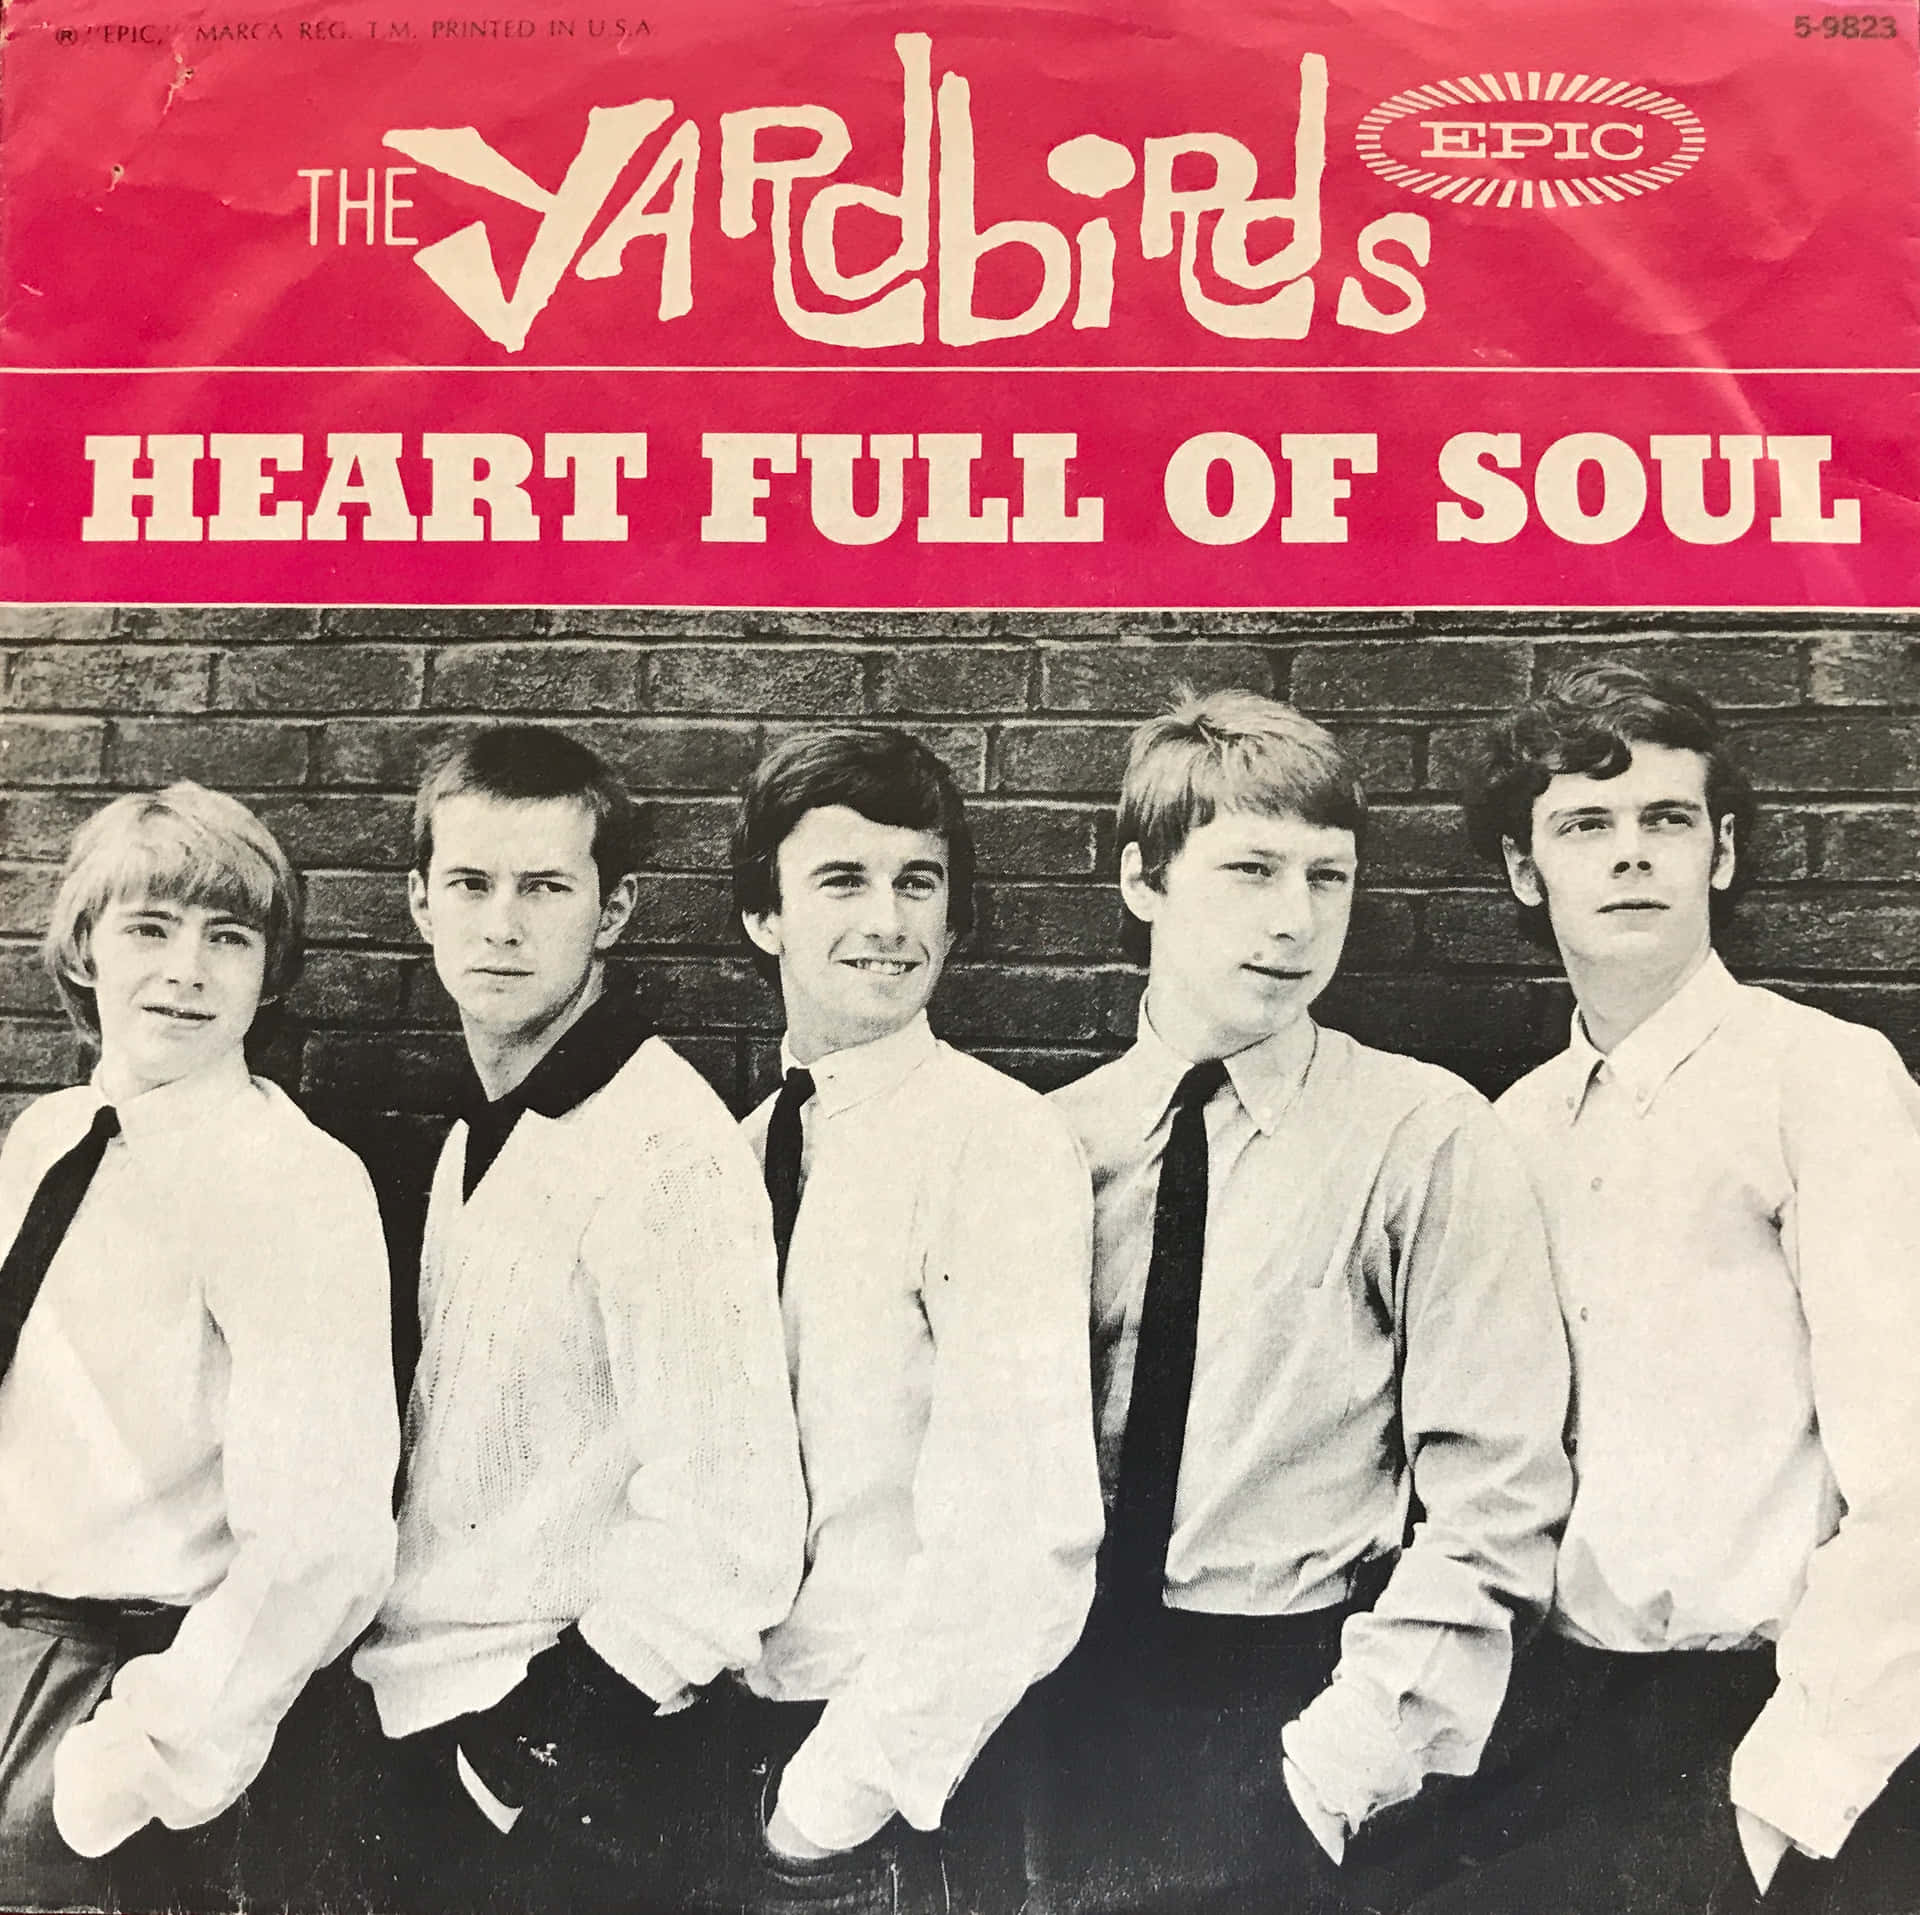 Caption: The Yardbirds 'Heart Full of Soul' Vinyl Album Cover Wallpaper